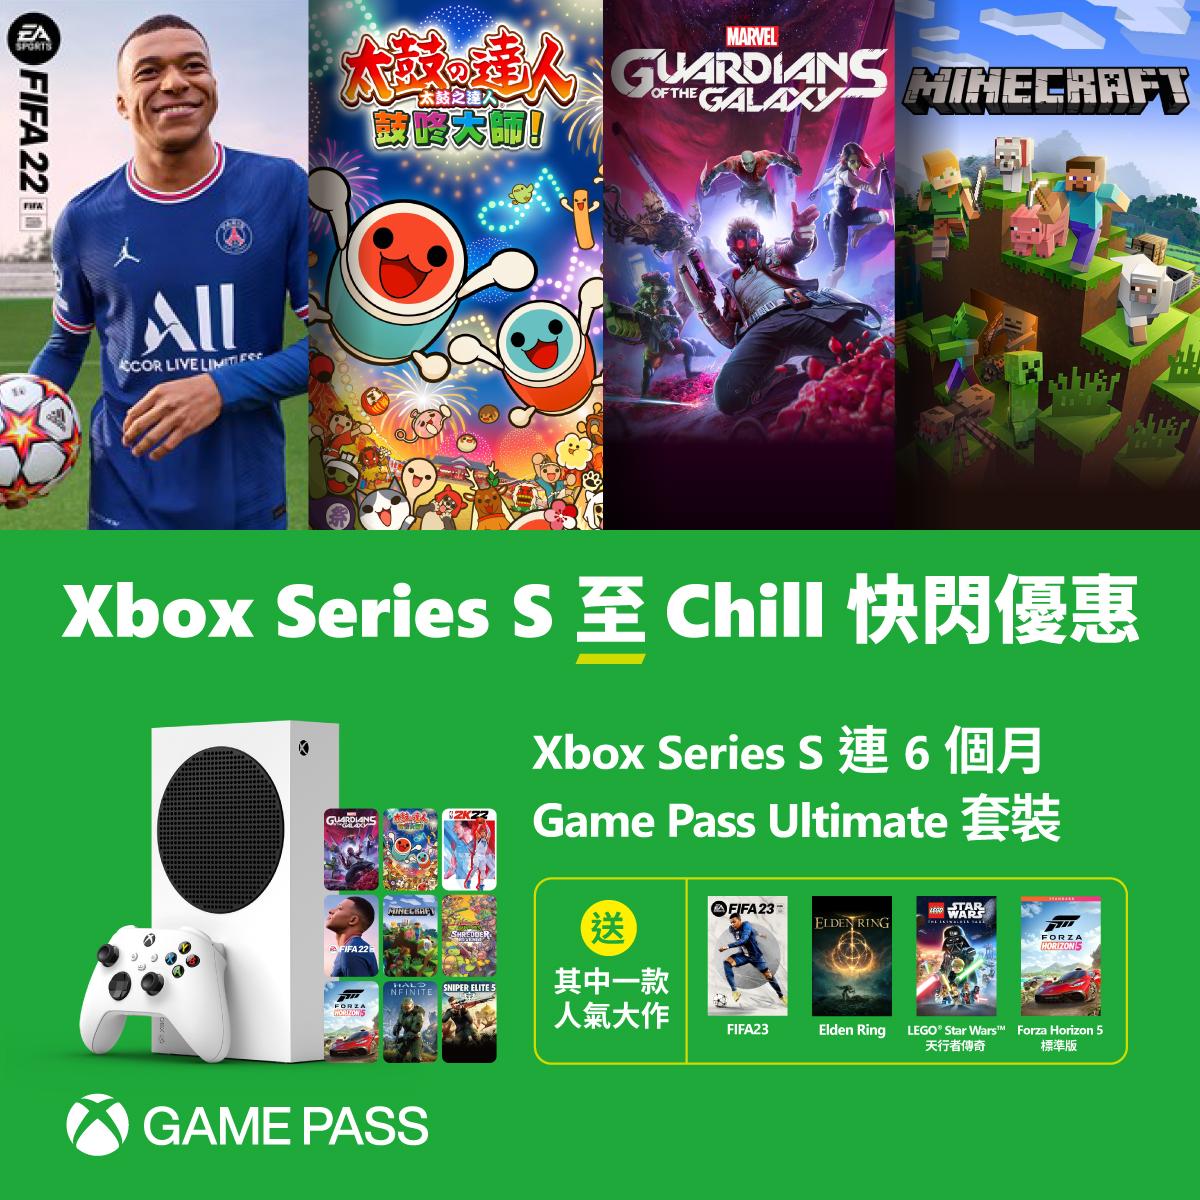 Xbox Series S至Chill快閃優惠  出機即玩超過400款遊戲  額外再搶先獲得《FIFA23》等人氣大作